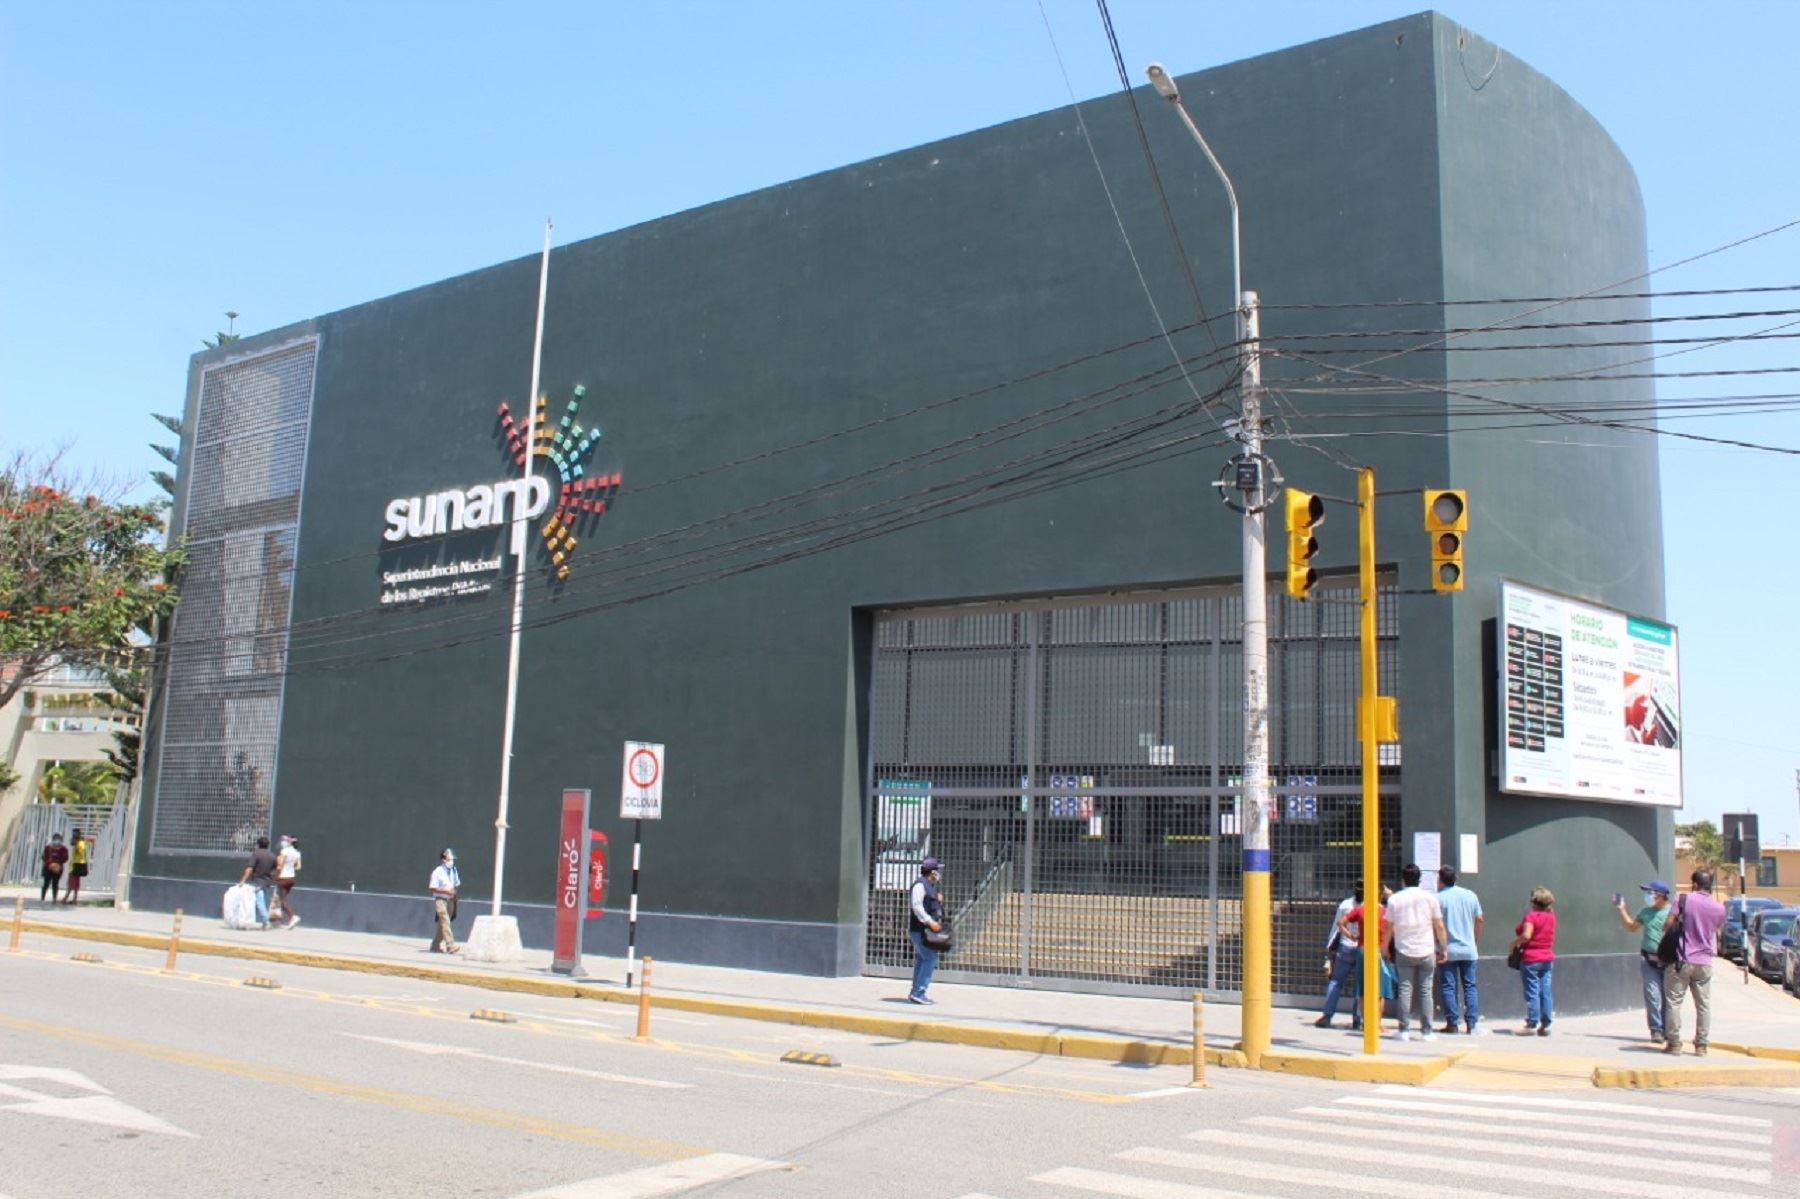 Contraloría General identifica demoras de actos registrales de Sunarp en la sede Chiclayo. Foto: Difusión